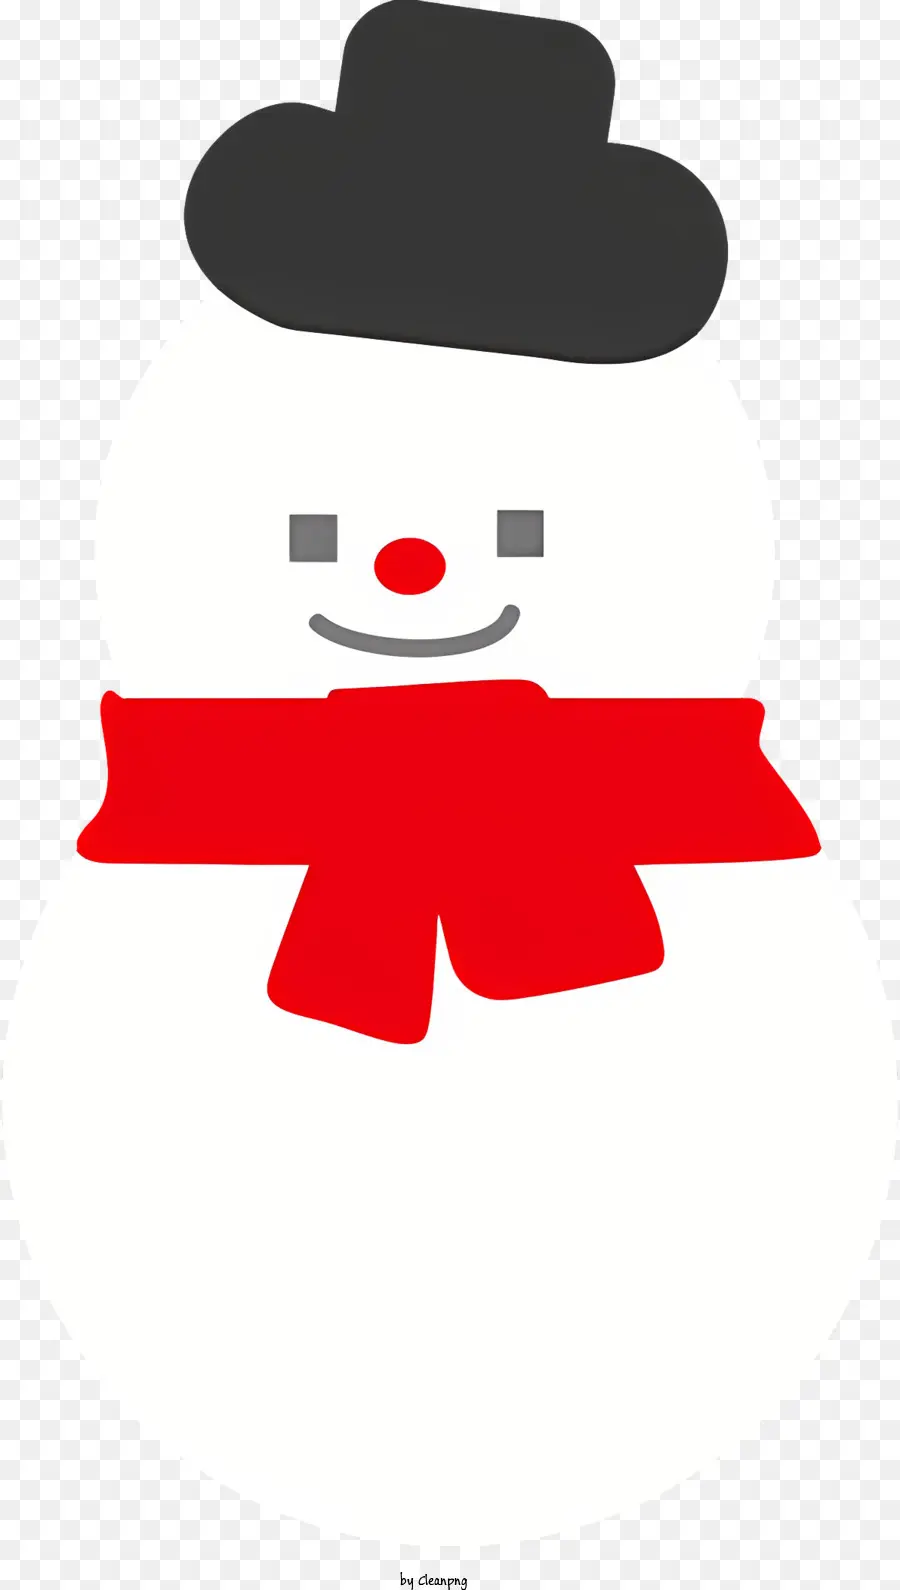 Phim hoạt hình Người tuyết đen và trắng sọc sọc đen mũ đầu trắng ban nhạc đen - Người tuyết tươi cười với chiếc khăn sọc và mũ